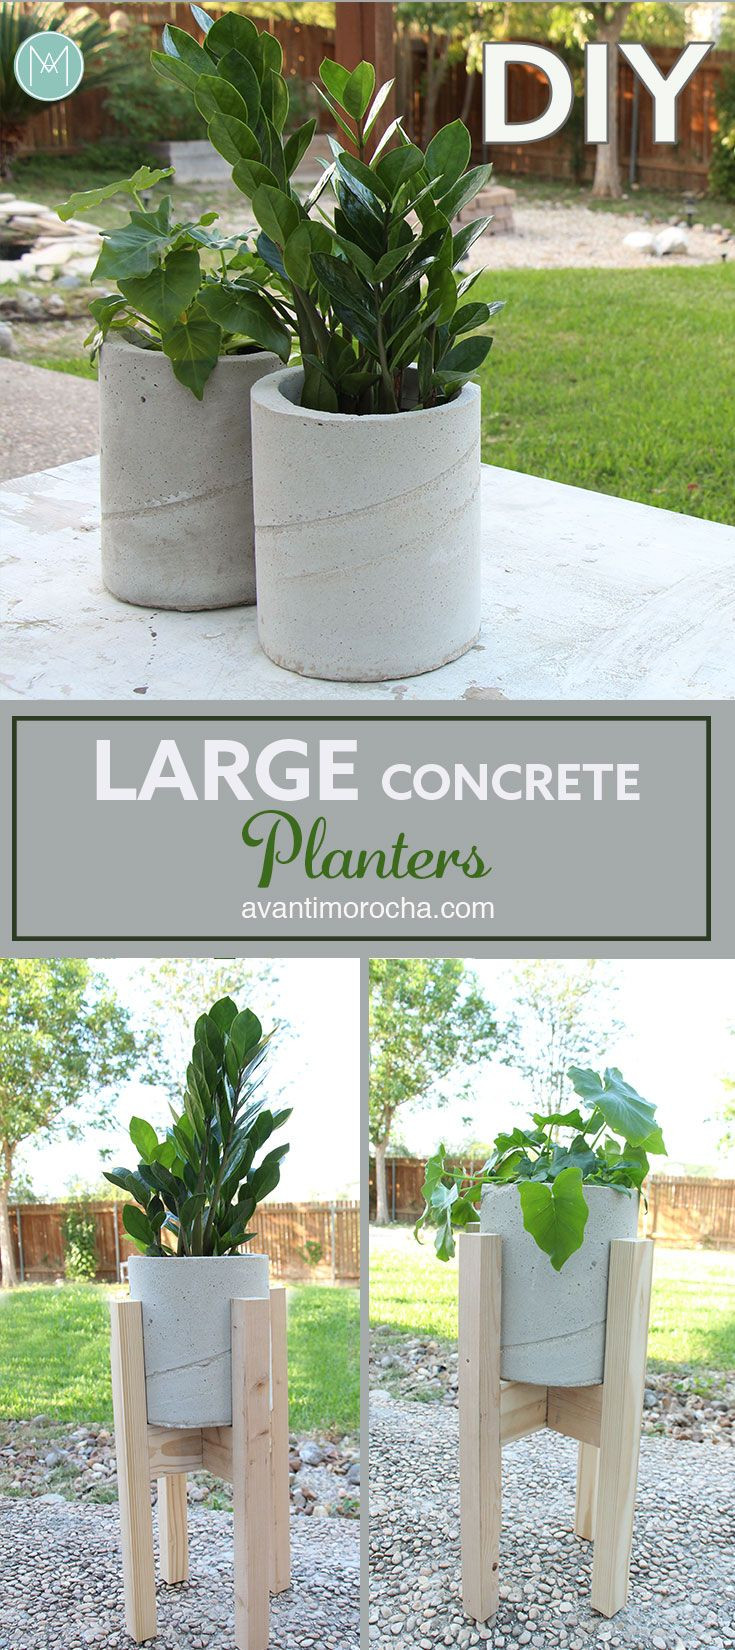 Best ideas about DIY Large Concrete Planters
. Save or Pin Best 25 Diy concrete planters ideas on Pinterest Now.